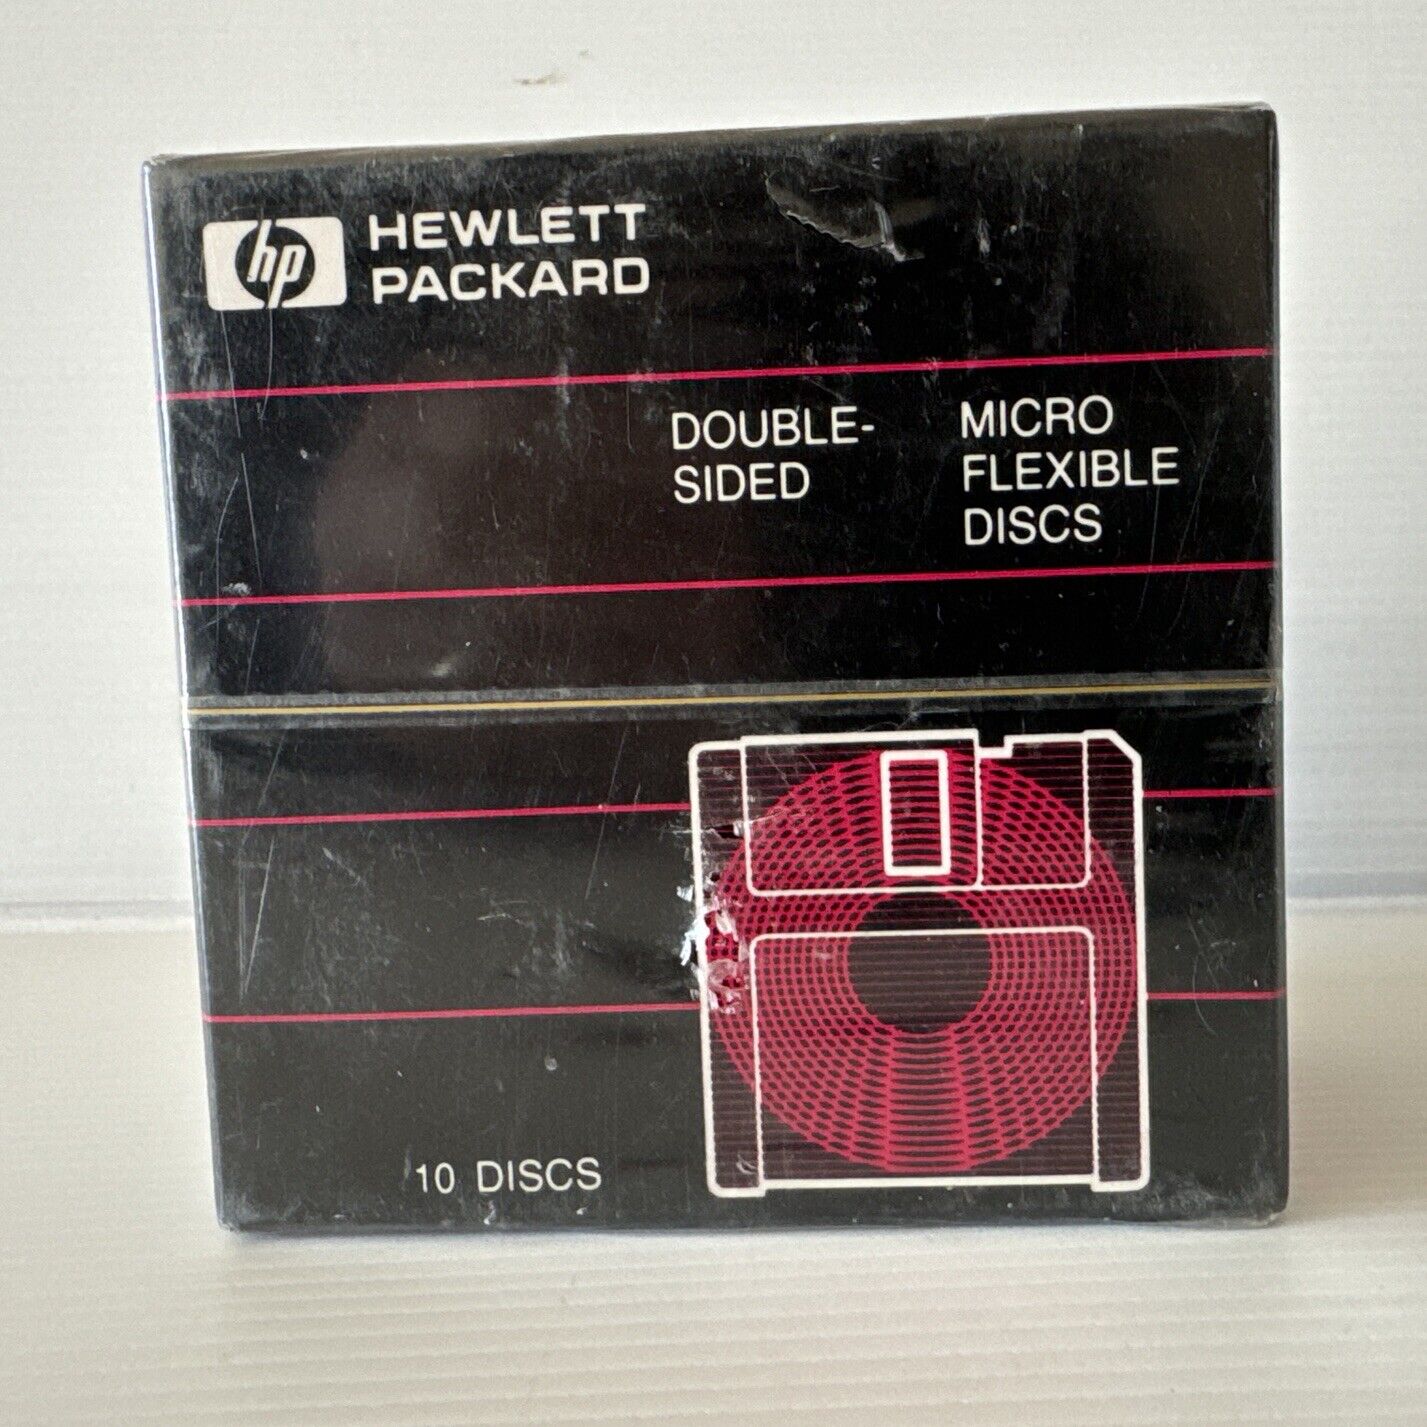 HP Hewlett Packard Flexible Floppy 10 Discs Double-Sided 92192A sealed